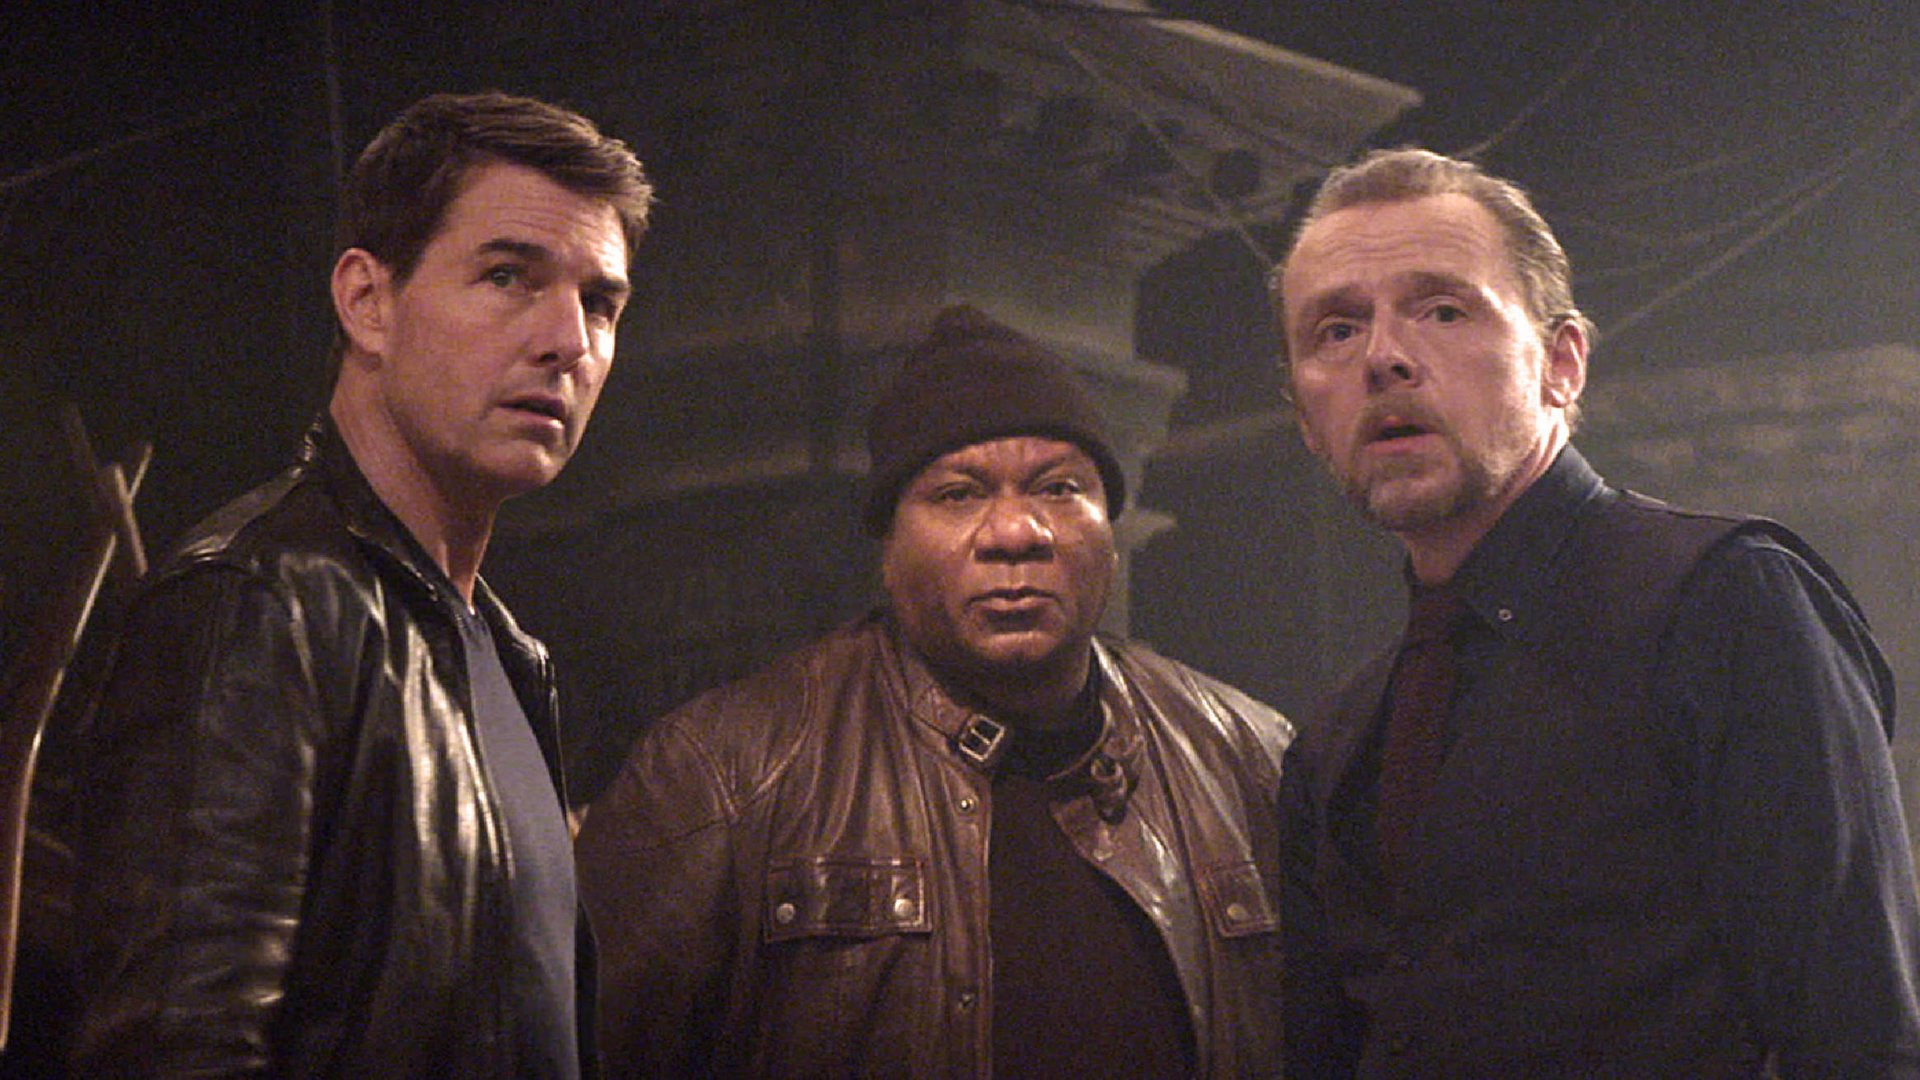 #„Mission: Impossible 8“-Kinostart kaum einzuhalten: Actionfinale aus aktuellem Anlass bedroht